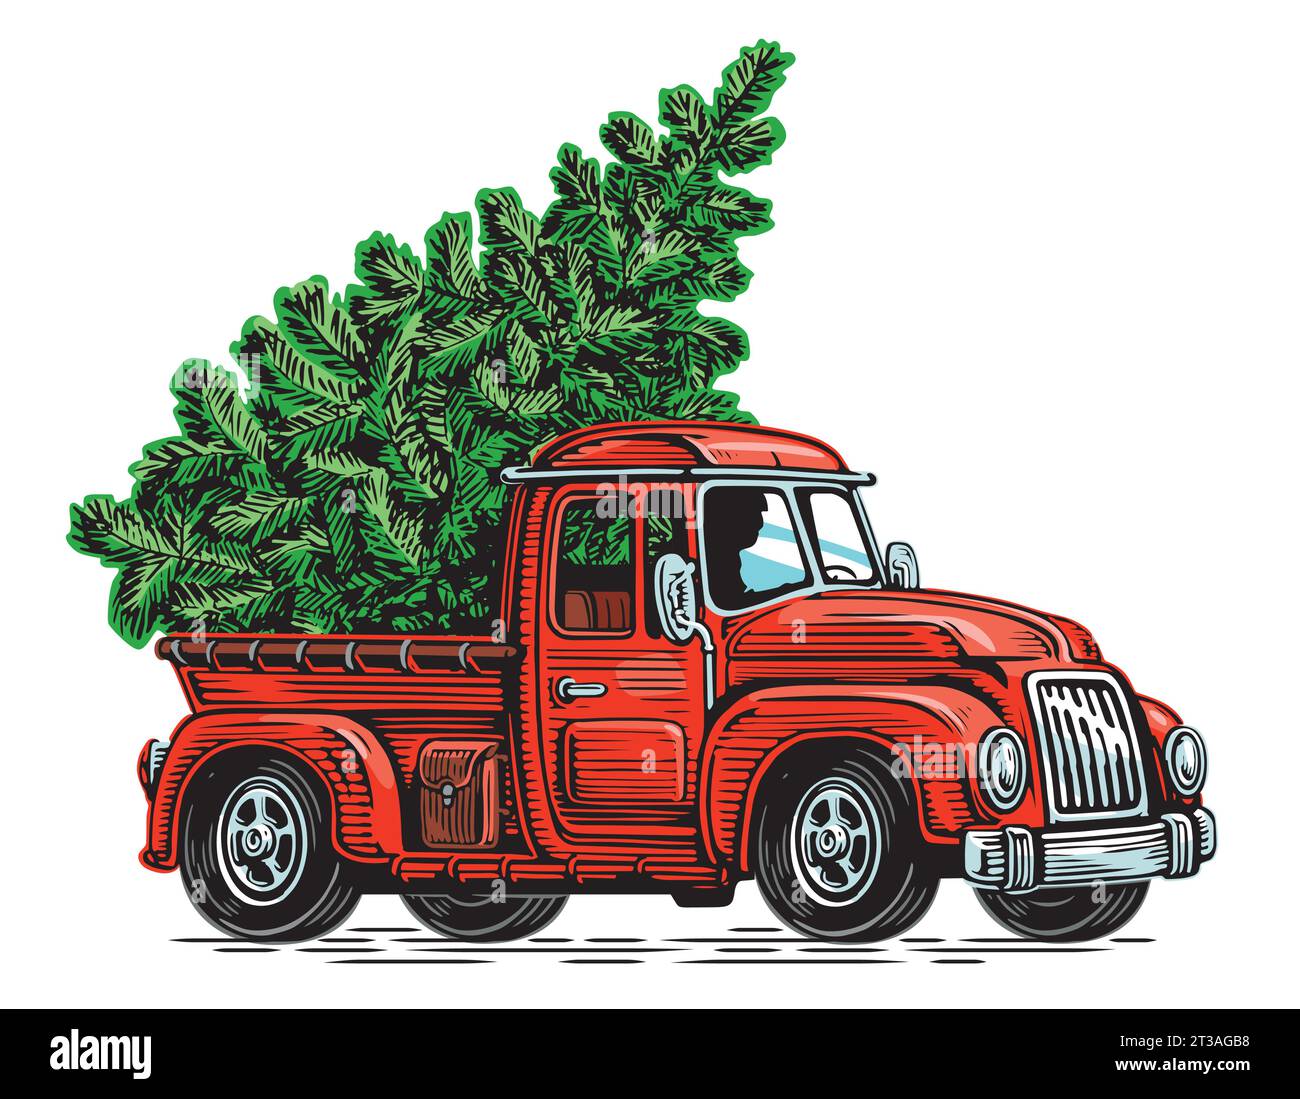 Grüne Tanne auf rotem Retro-Pickup. Frohe Weihnachten und frohes neues Jahr. Vektorabbildung Stock Vektor